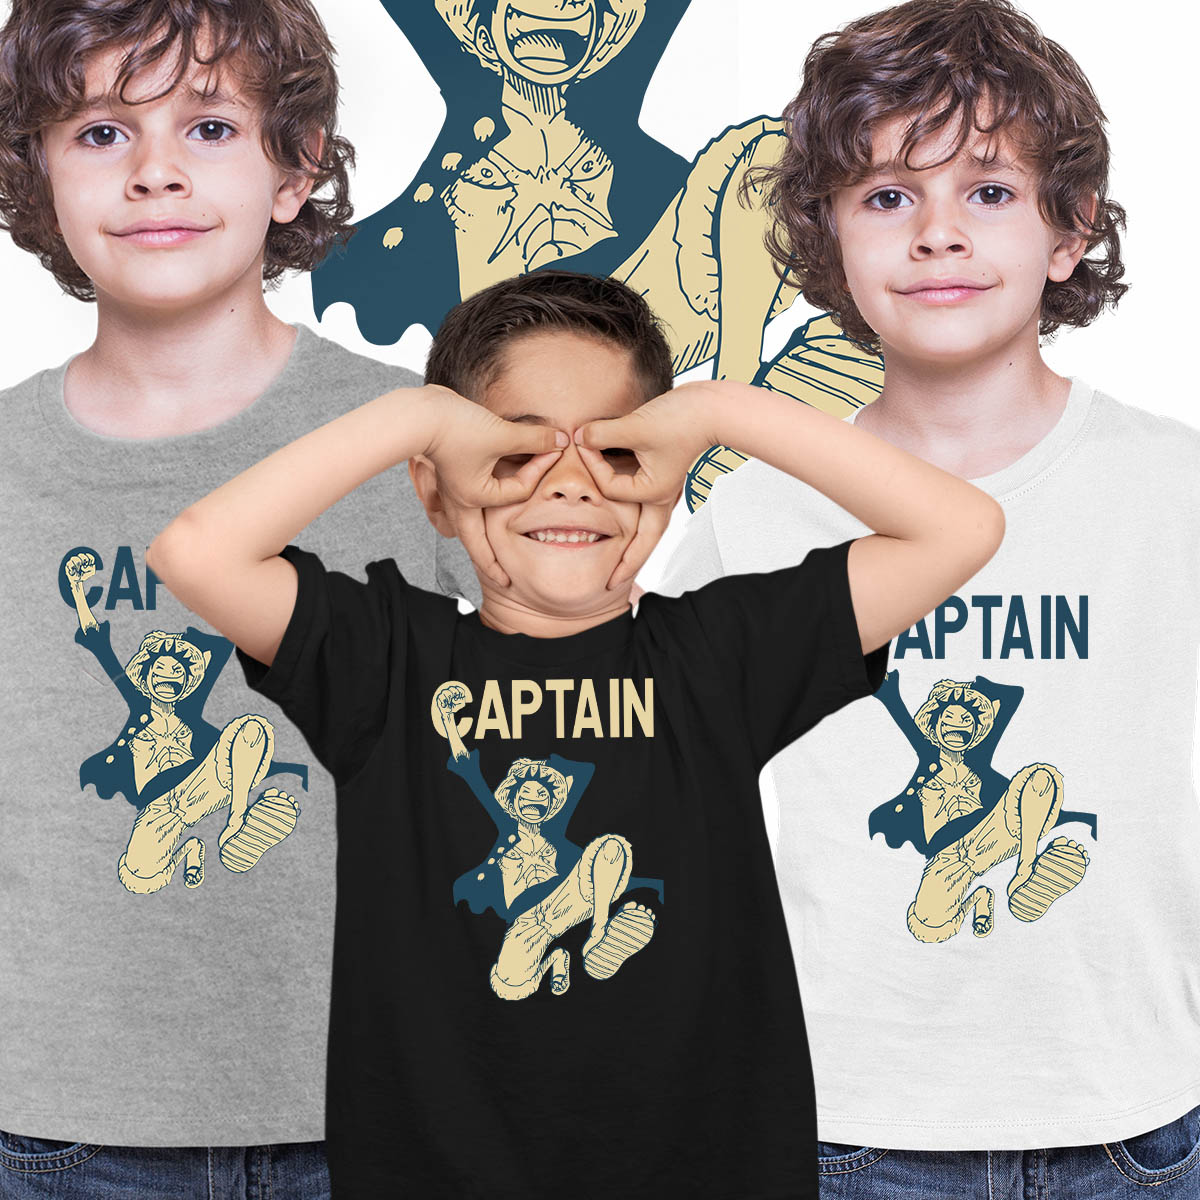 Monkey D. Luffy Captain Anime Manga Japanese  T-shirt for Kids